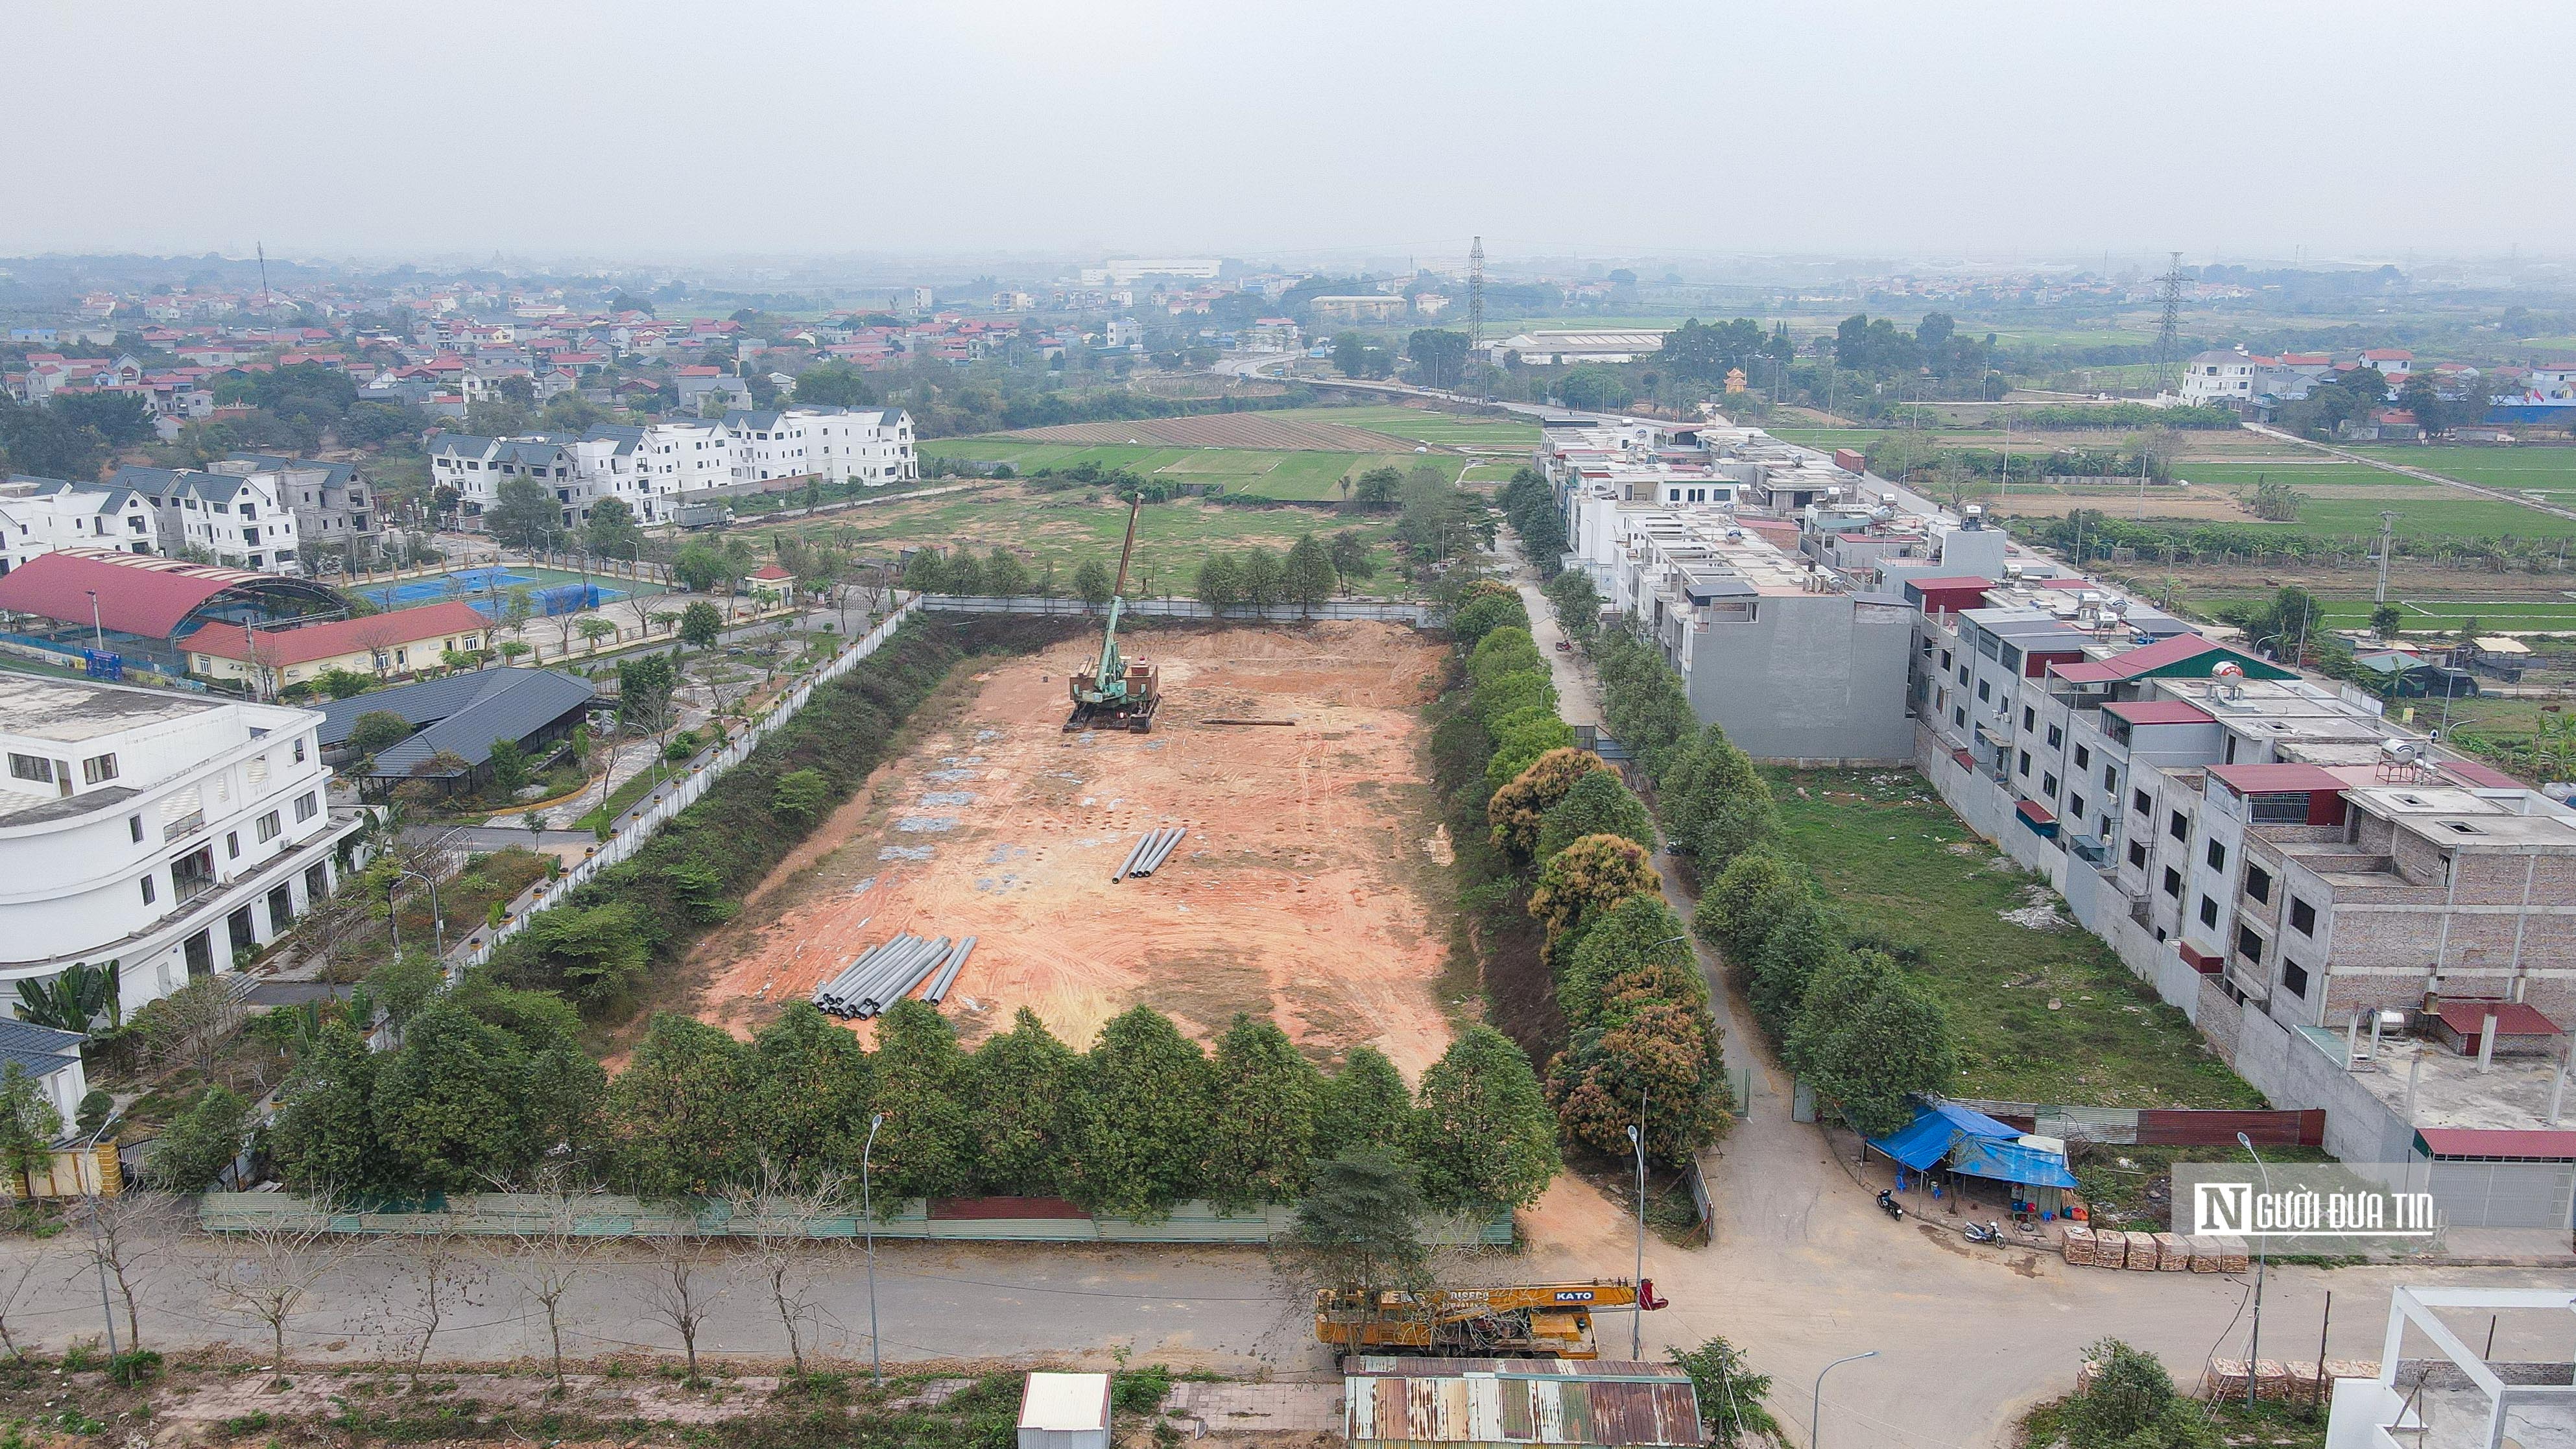 Bất động sản - Nhà ở xã hội Kim Hoa - Mê Linh được rao bán rầm rộ dù chưa làm móng (Hình 2).